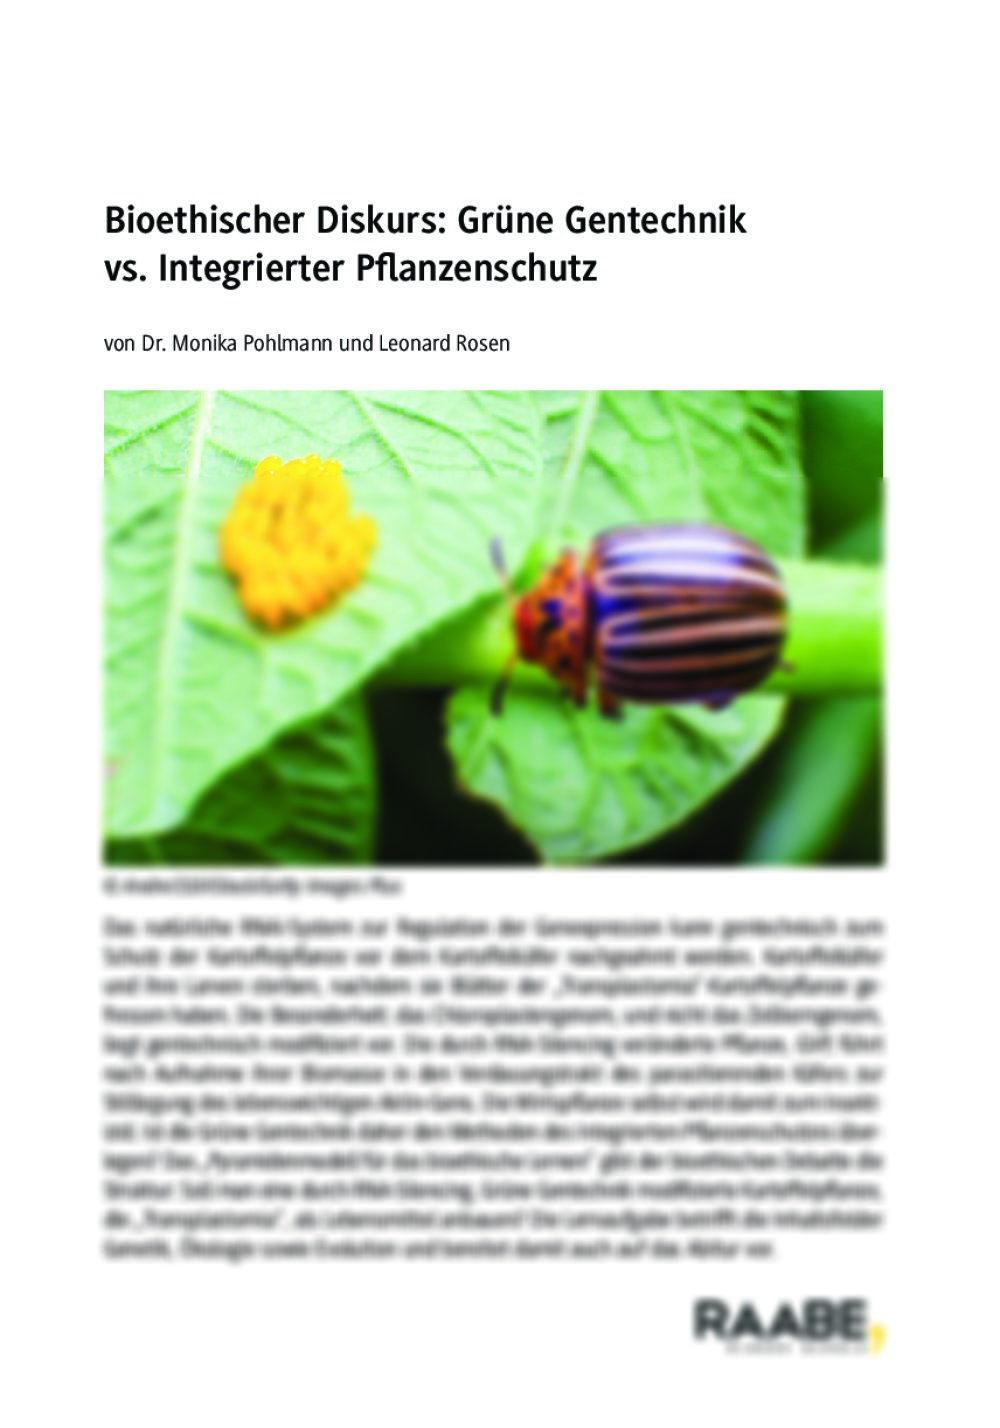 Bioethischer Diskurs: Grüne Gentechnik vs. Integrierter Pflanzenschutz - Seite 1